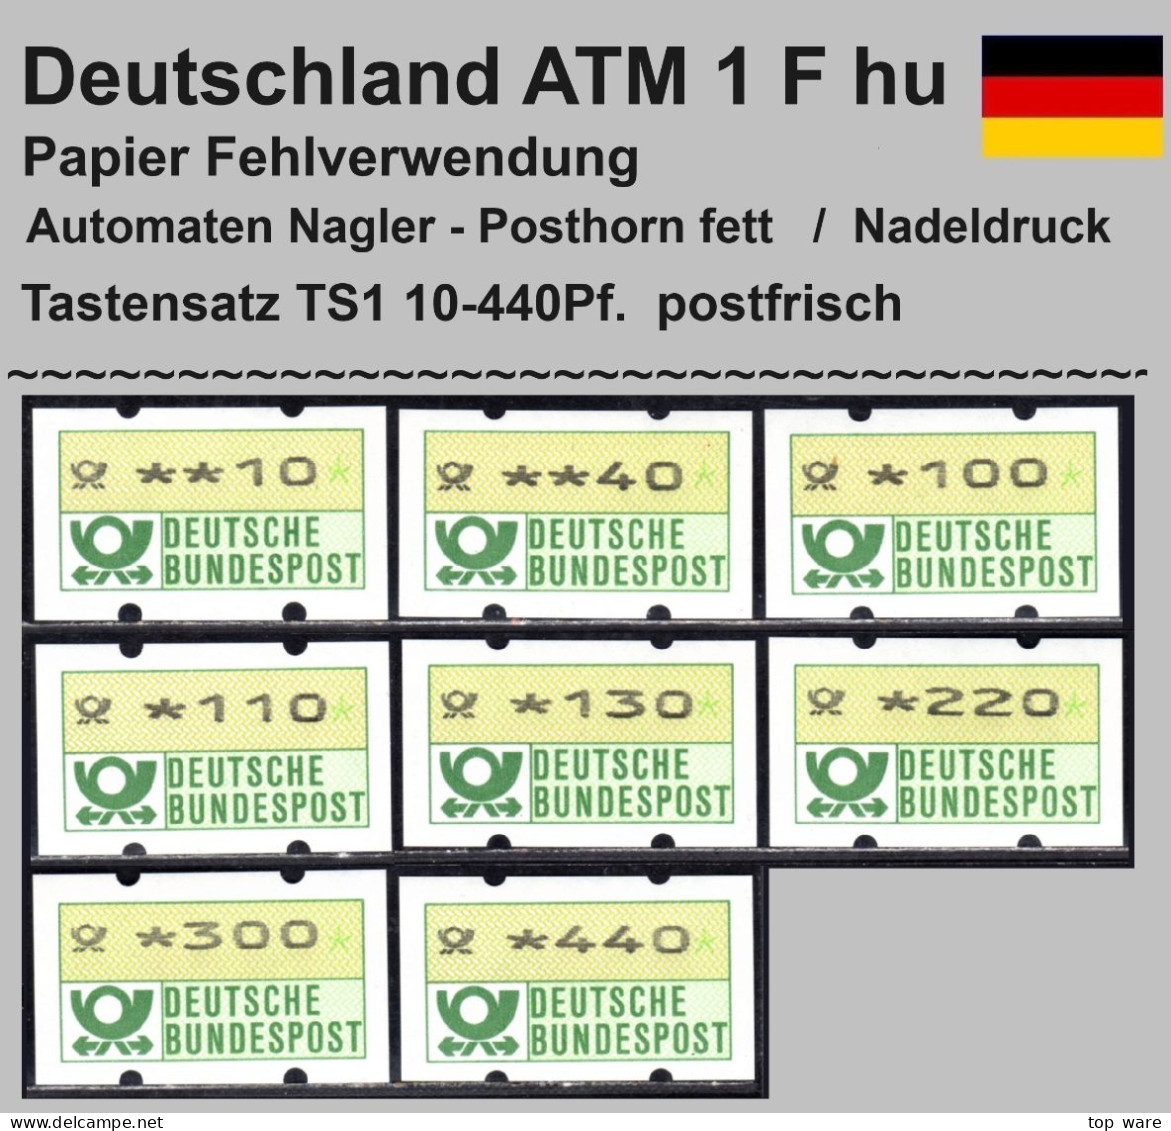 Deutschland Bund ATM 1 F Hu / Fehlverwendung Nagler Posthornaufdruck Tastensatz TS1 Postfrisch - Automatenmarken [ATM]